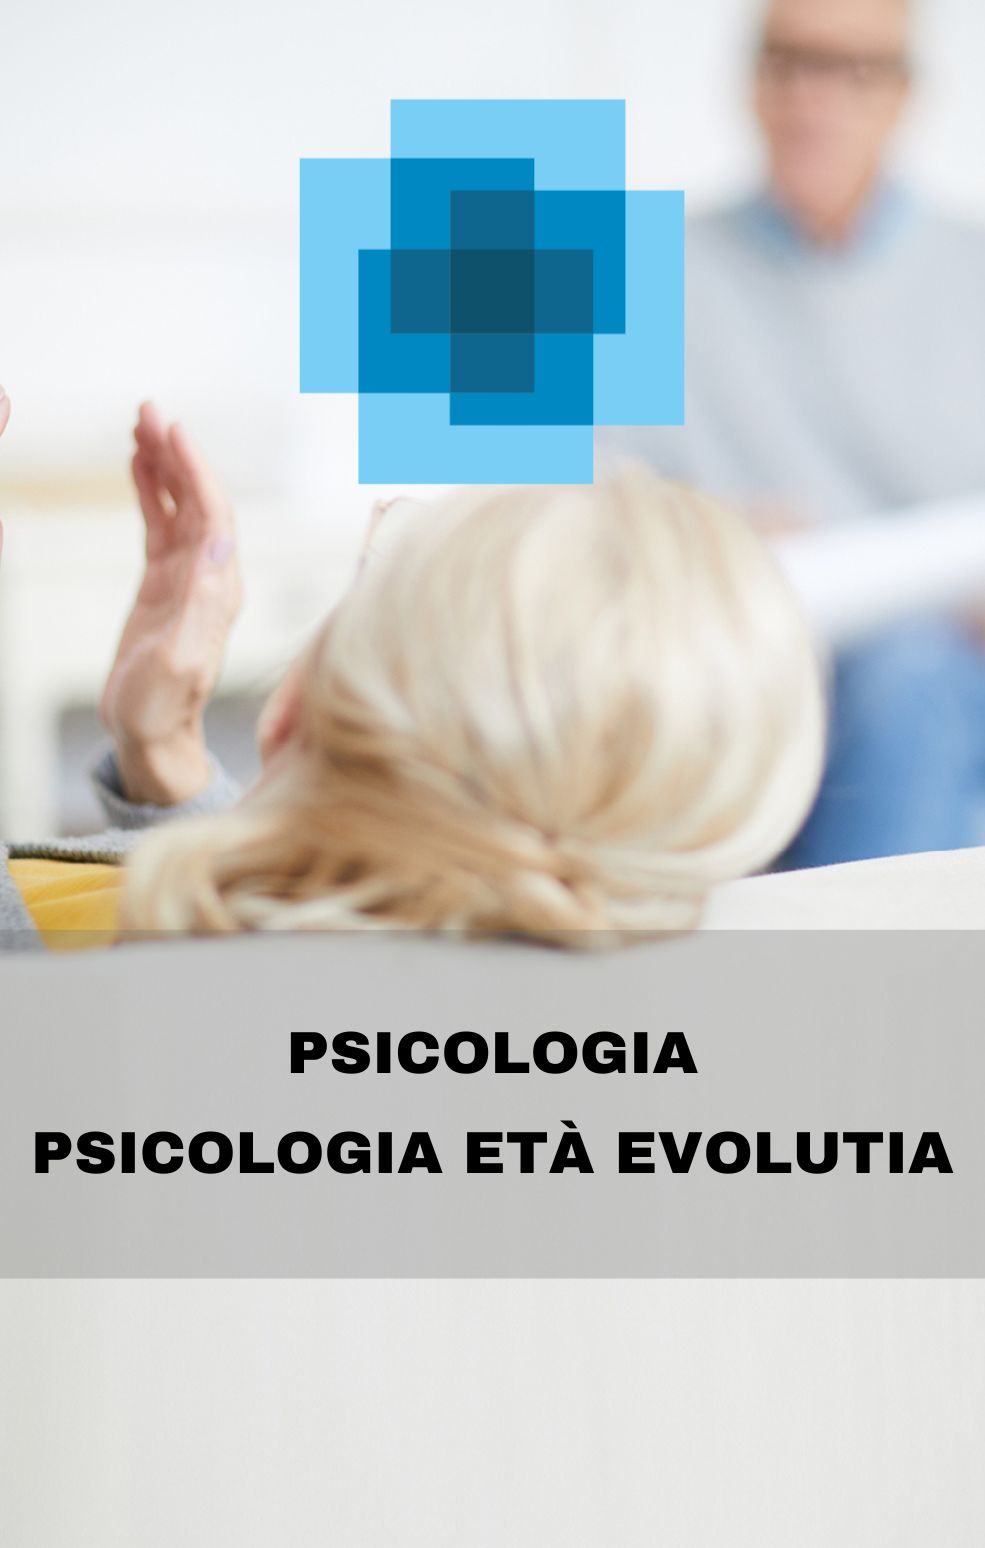 PSICOLOGIA PSICOLOGIA ETÀ EVOLUTIA